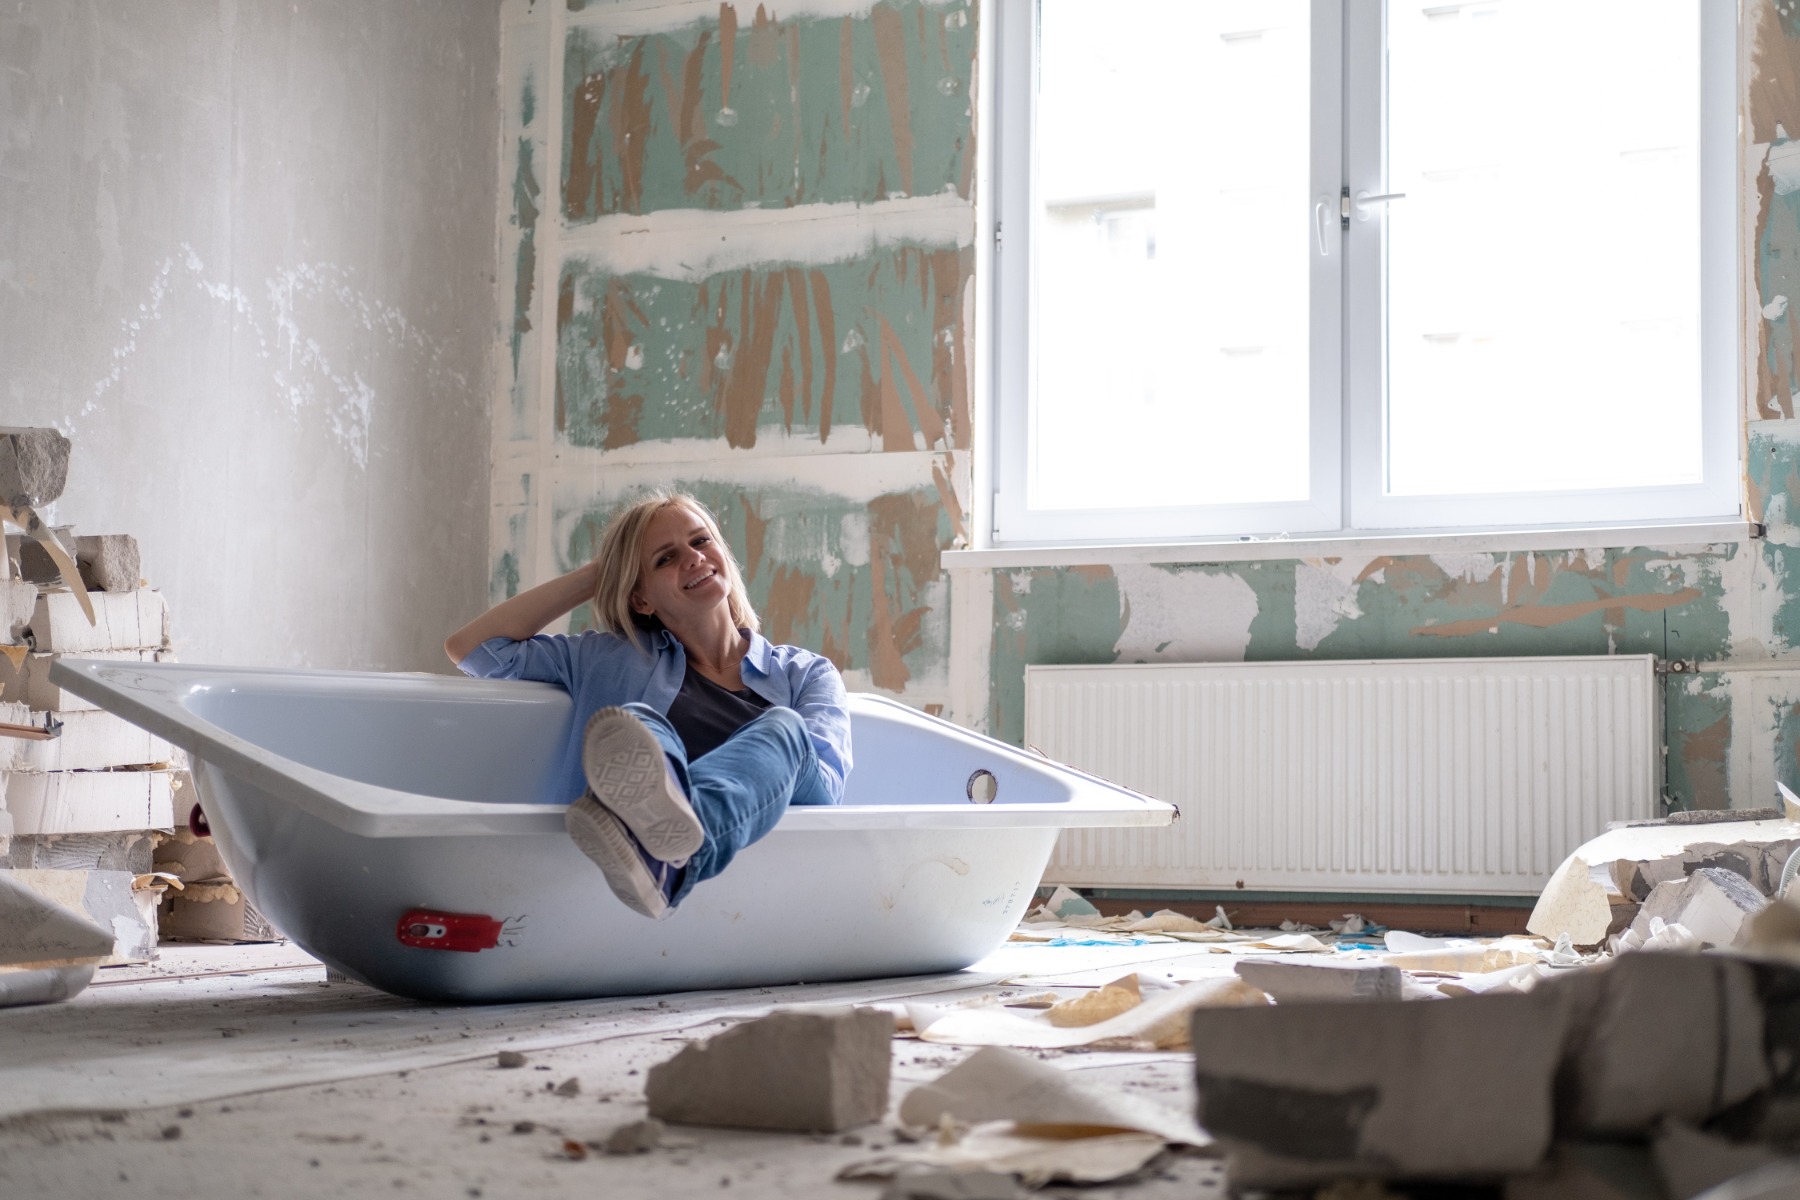 Women sitting inside a bathtub in an under-renovation bathroom.